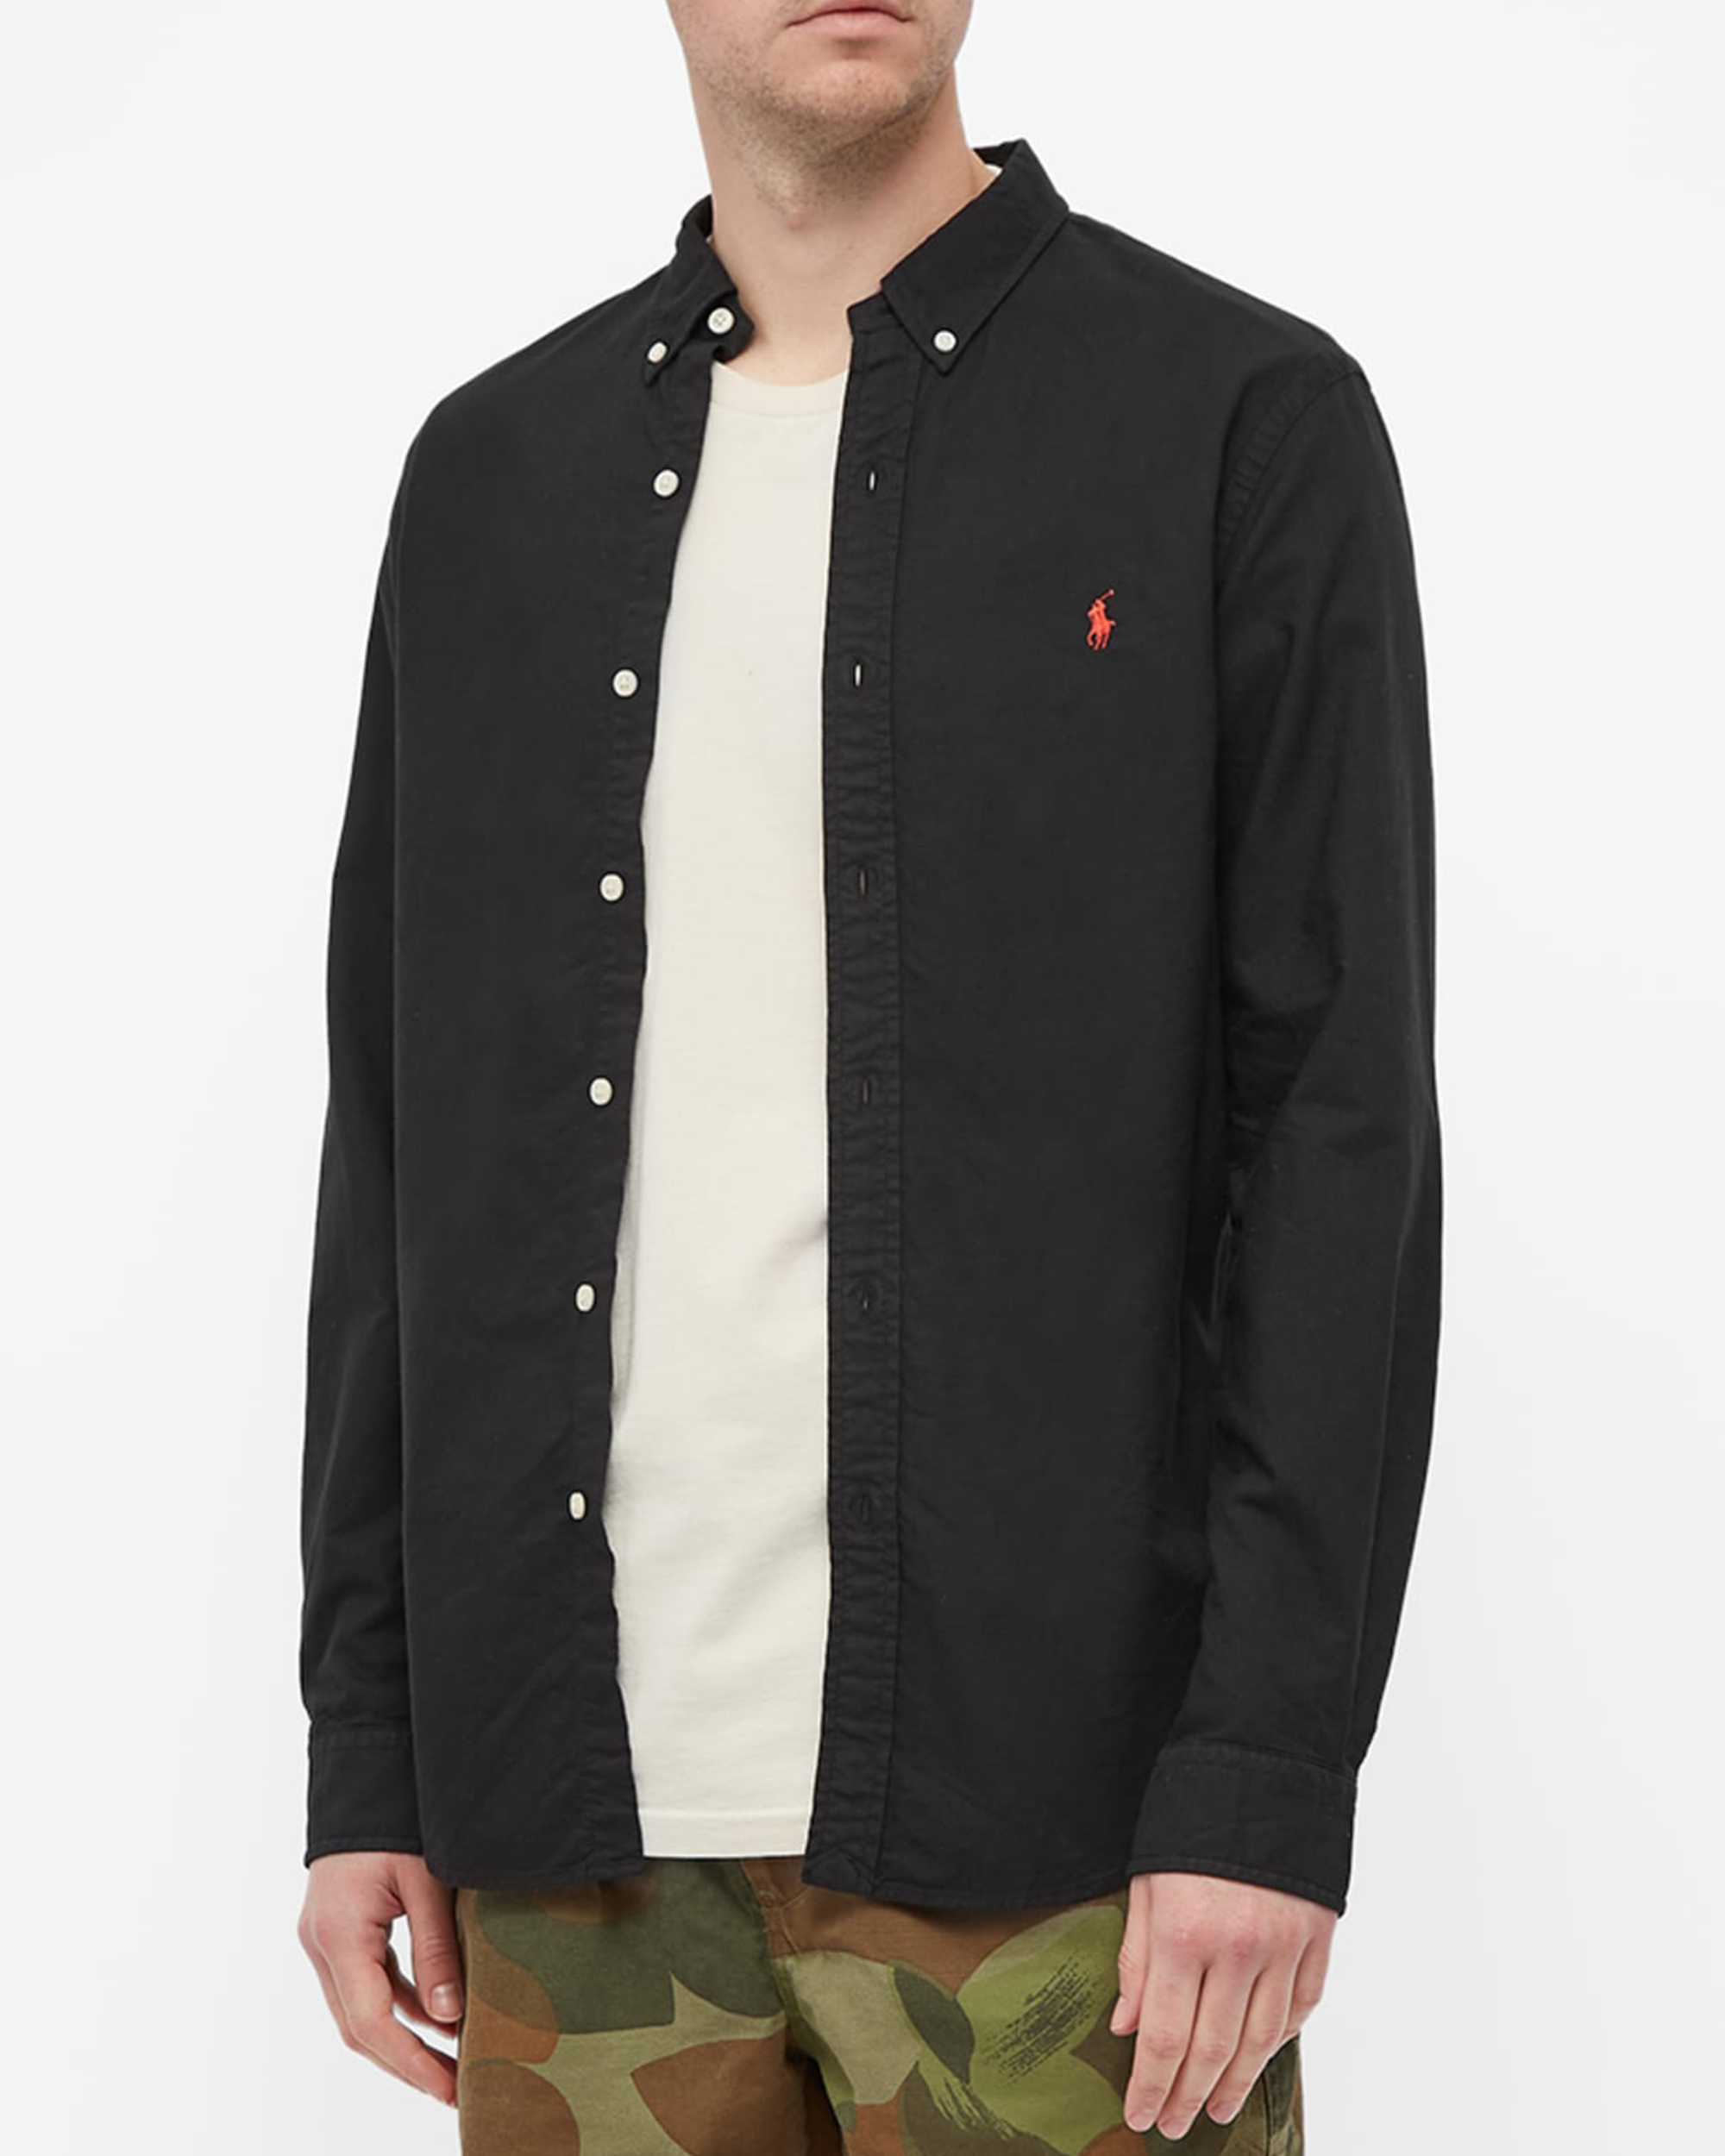 Woven Linen Button Up Shirt - Black